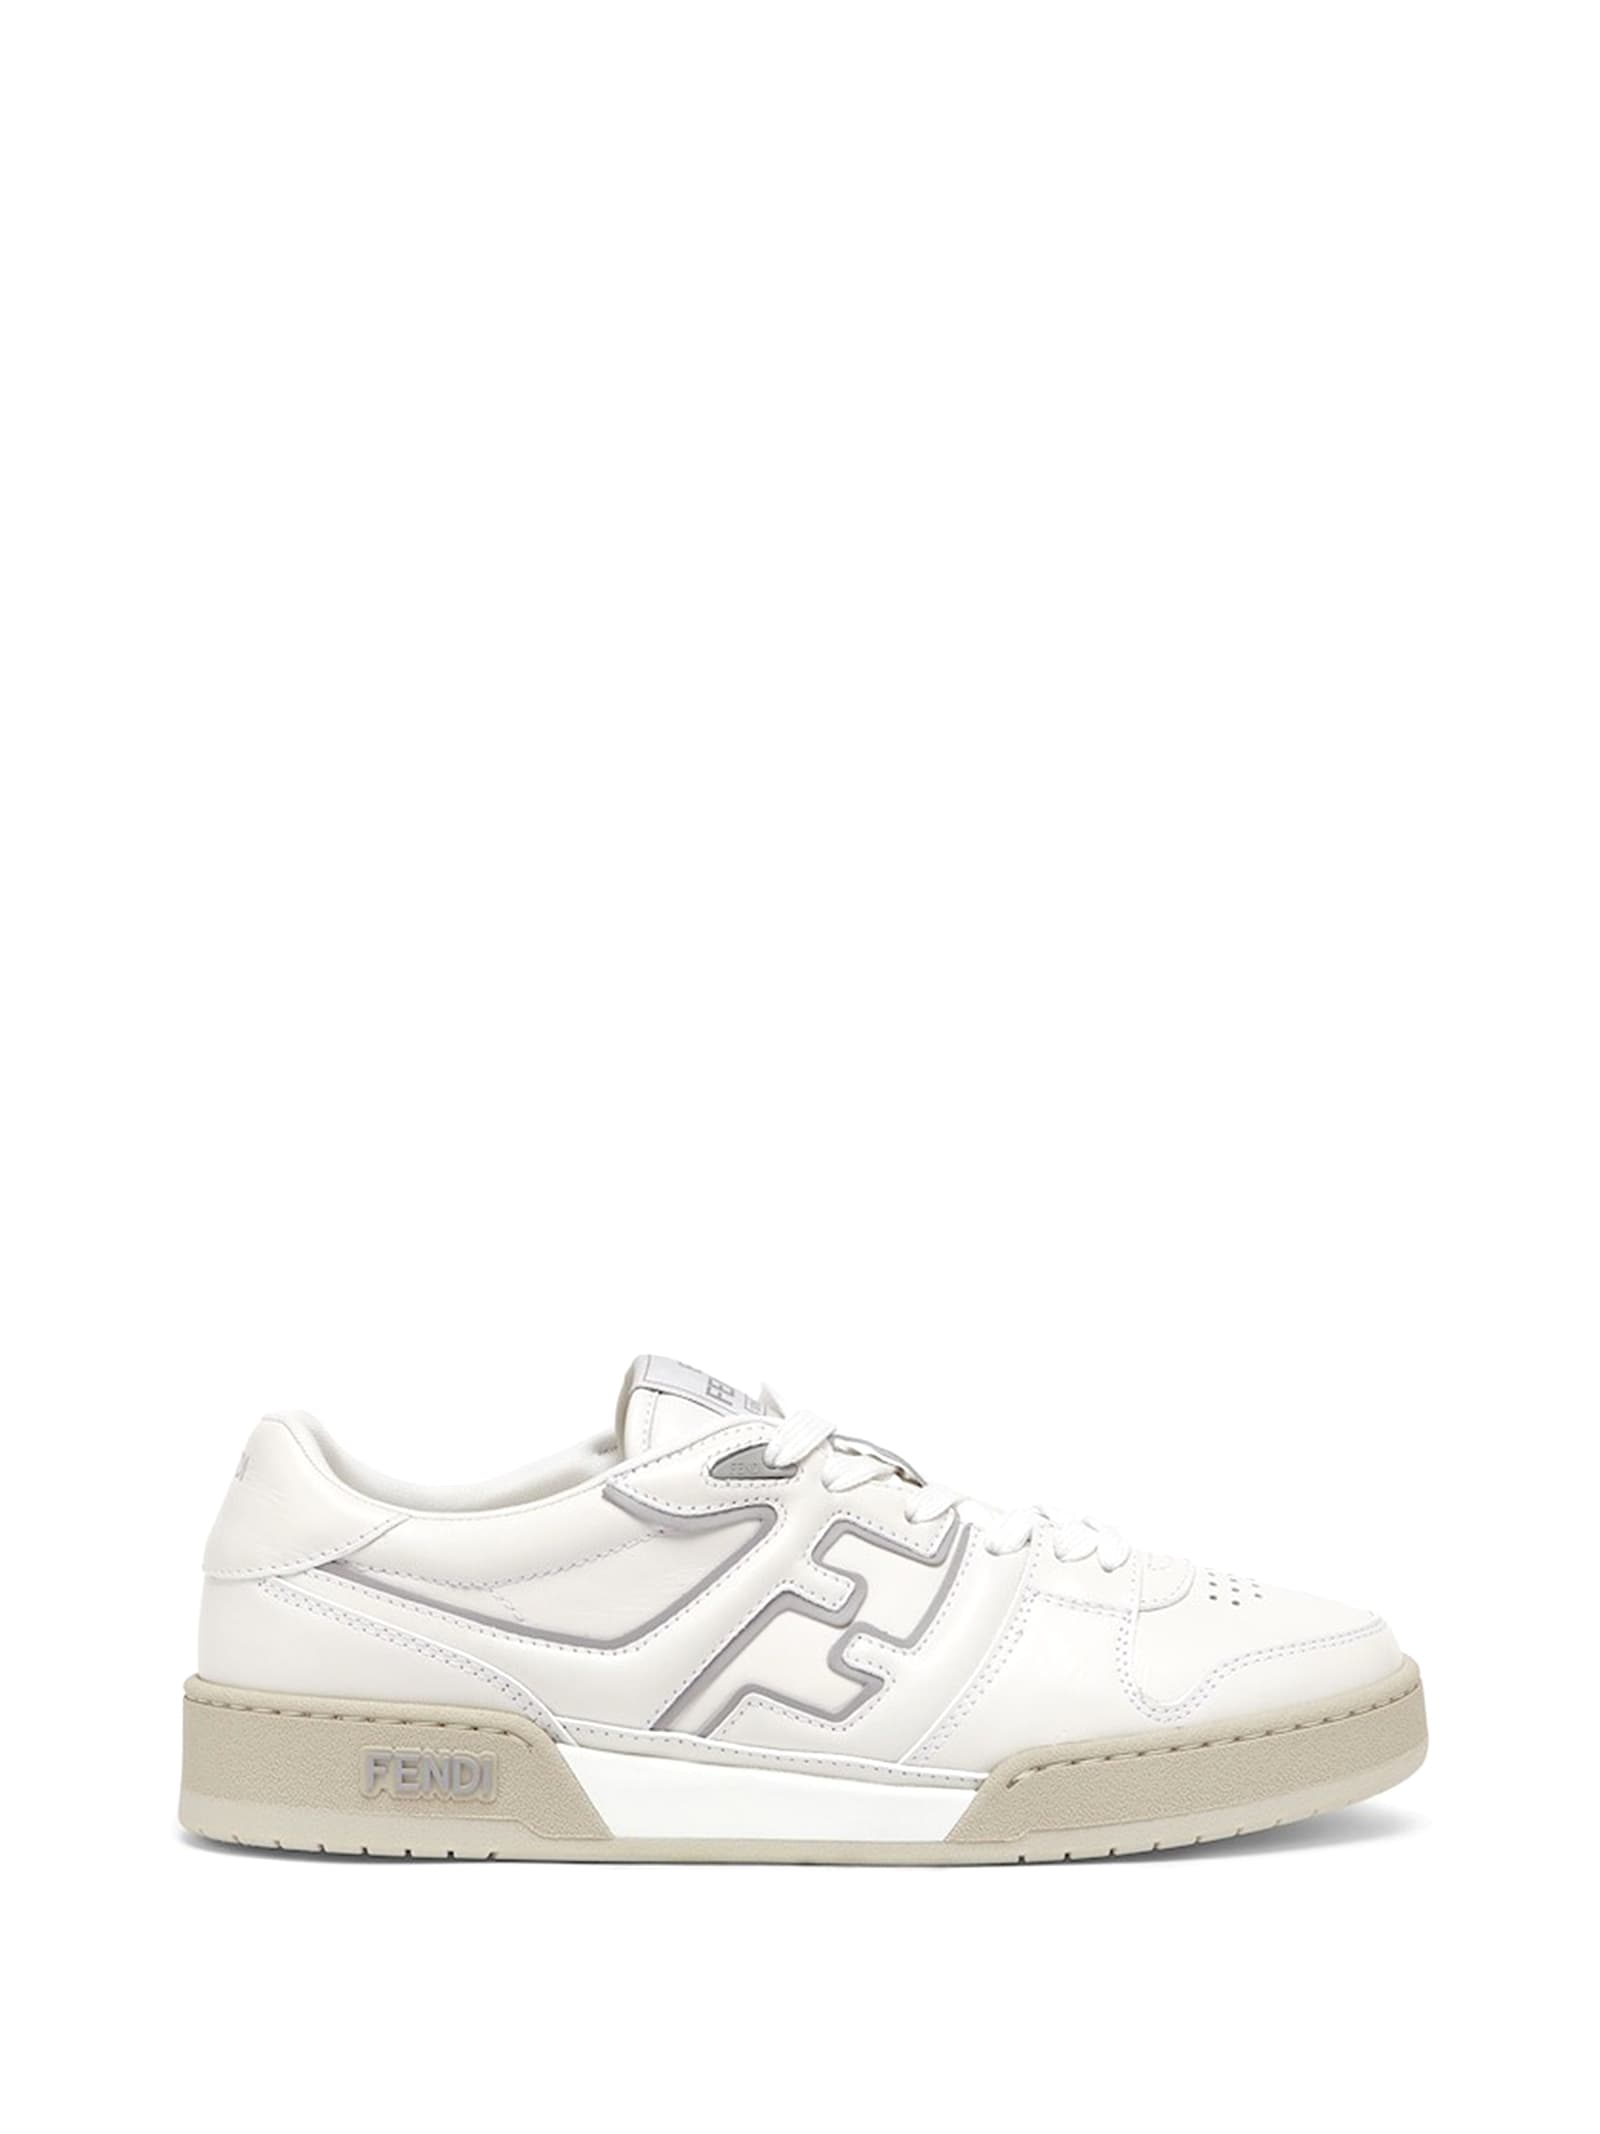 Shop Fendi Low Top Sneaker In White Leather In Bianco Grgio Chiaro